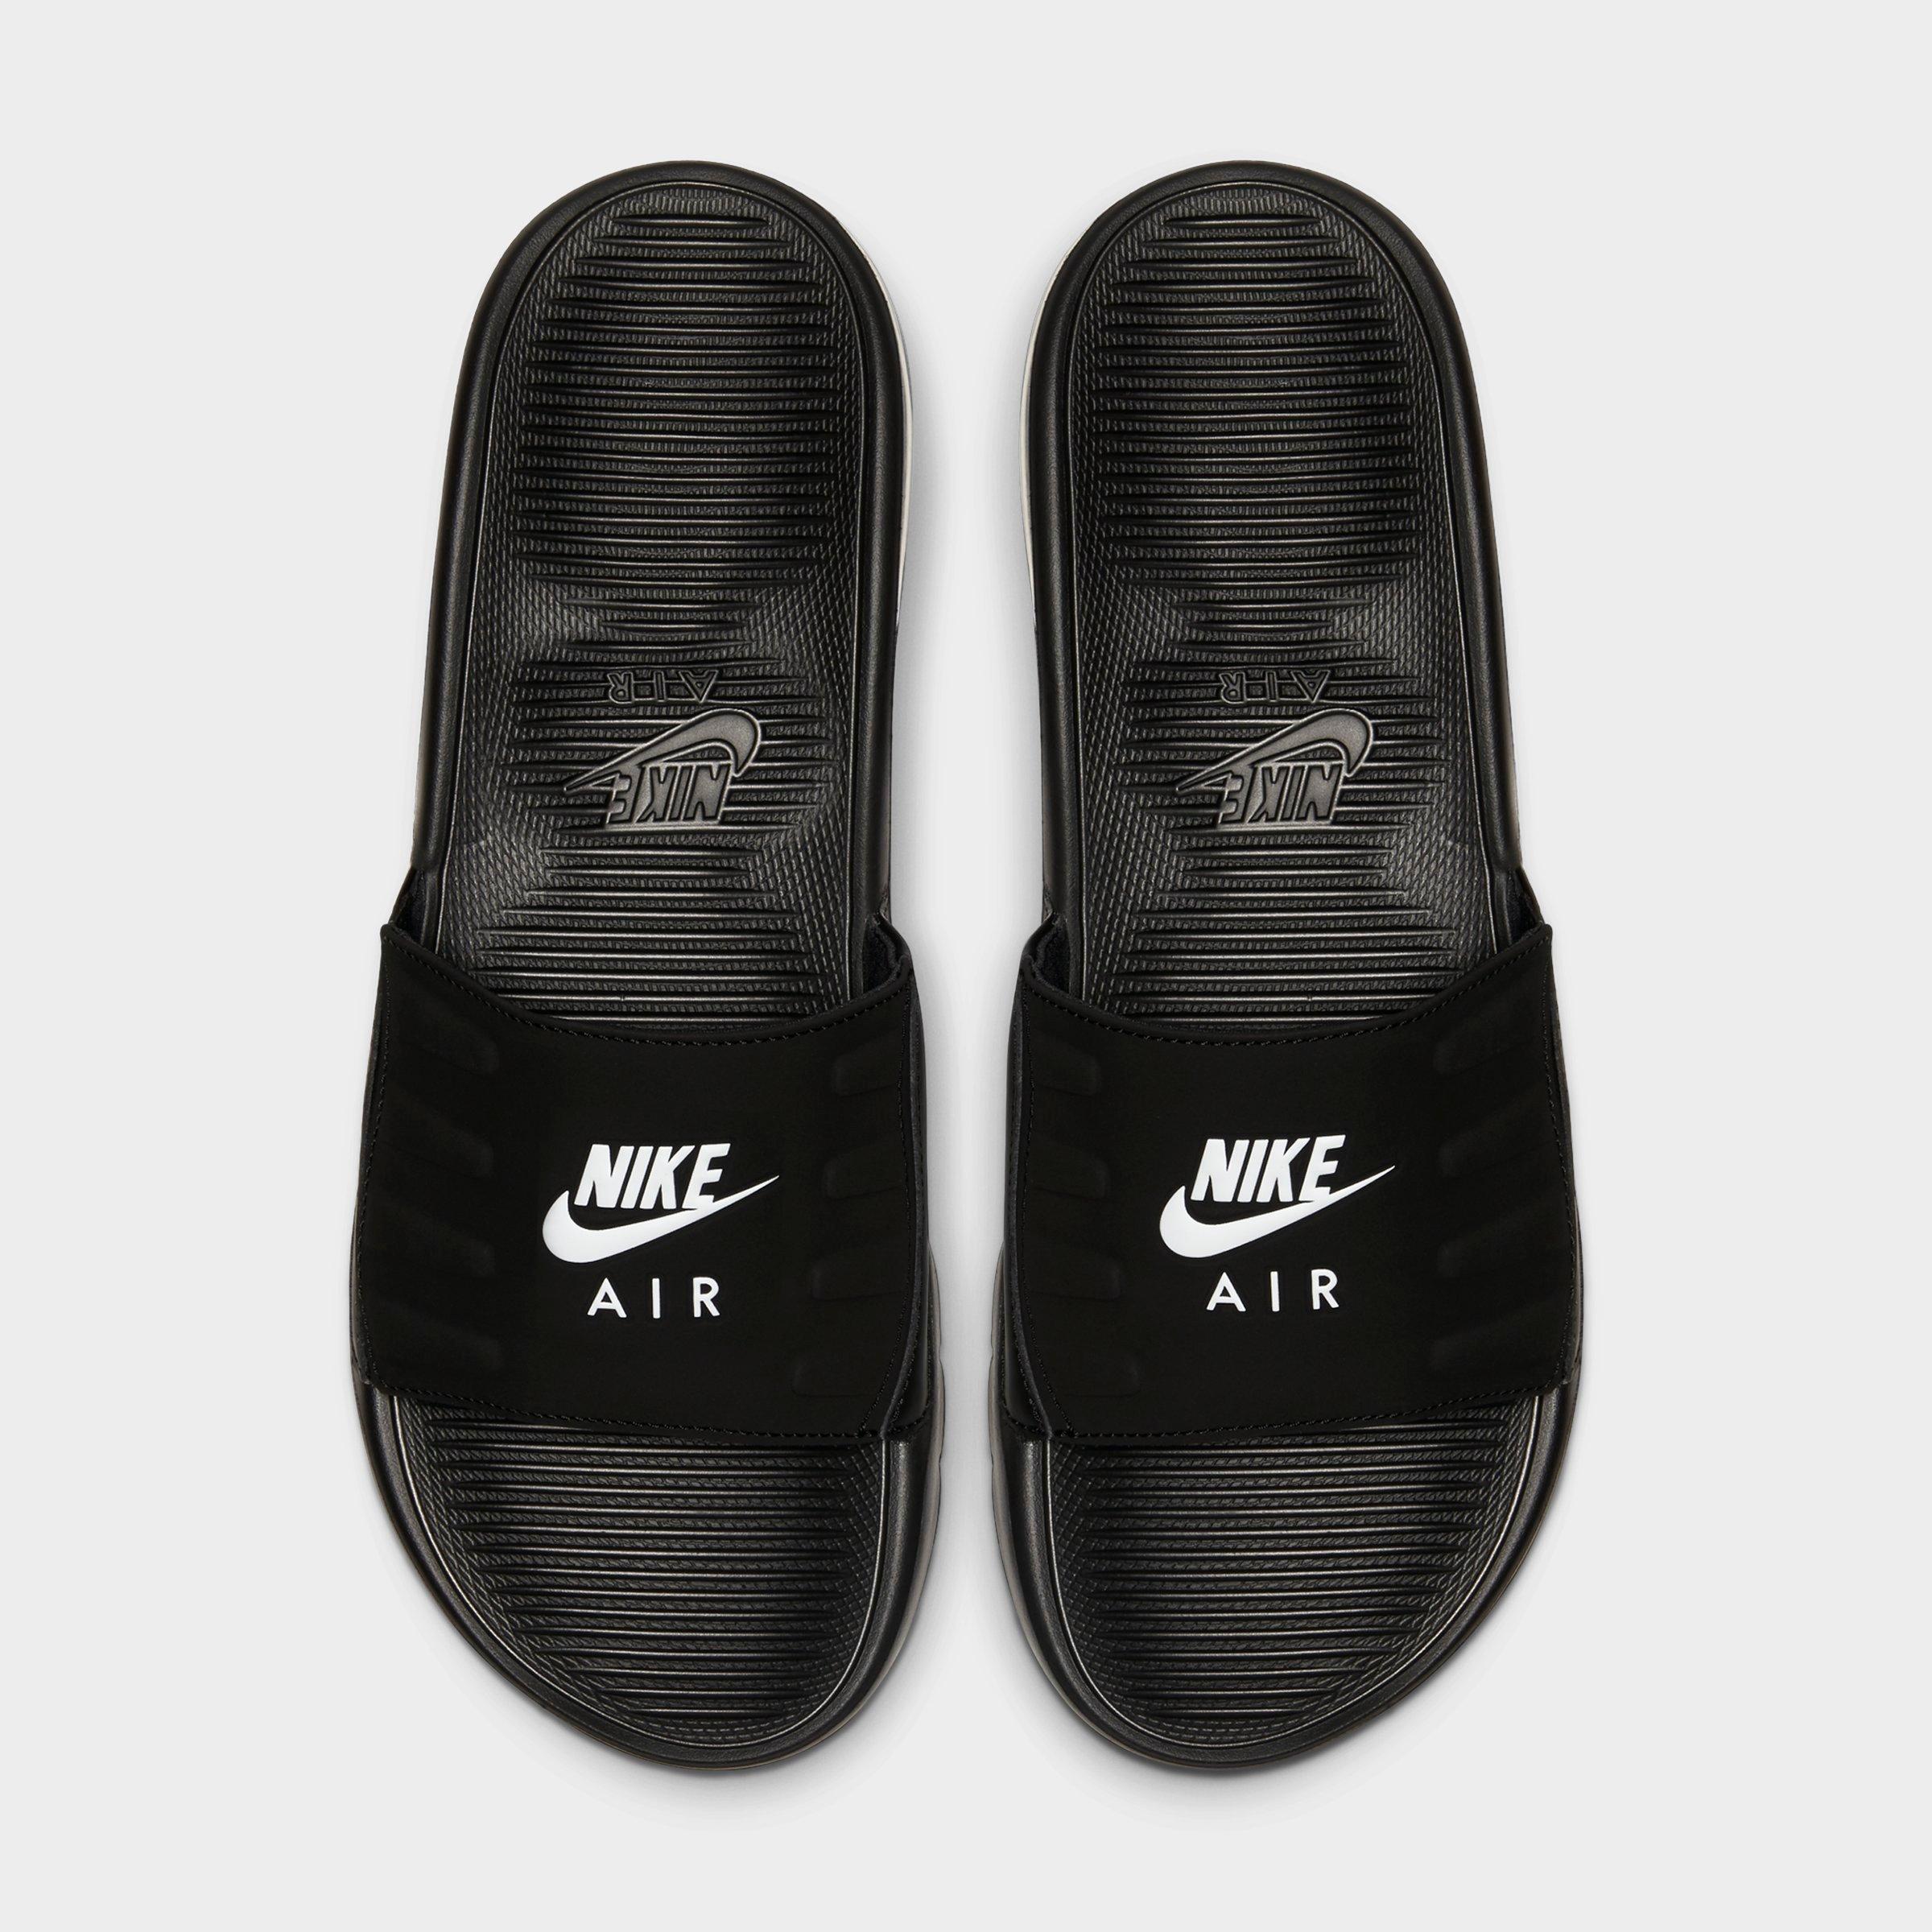 men's nike air max slide sandals